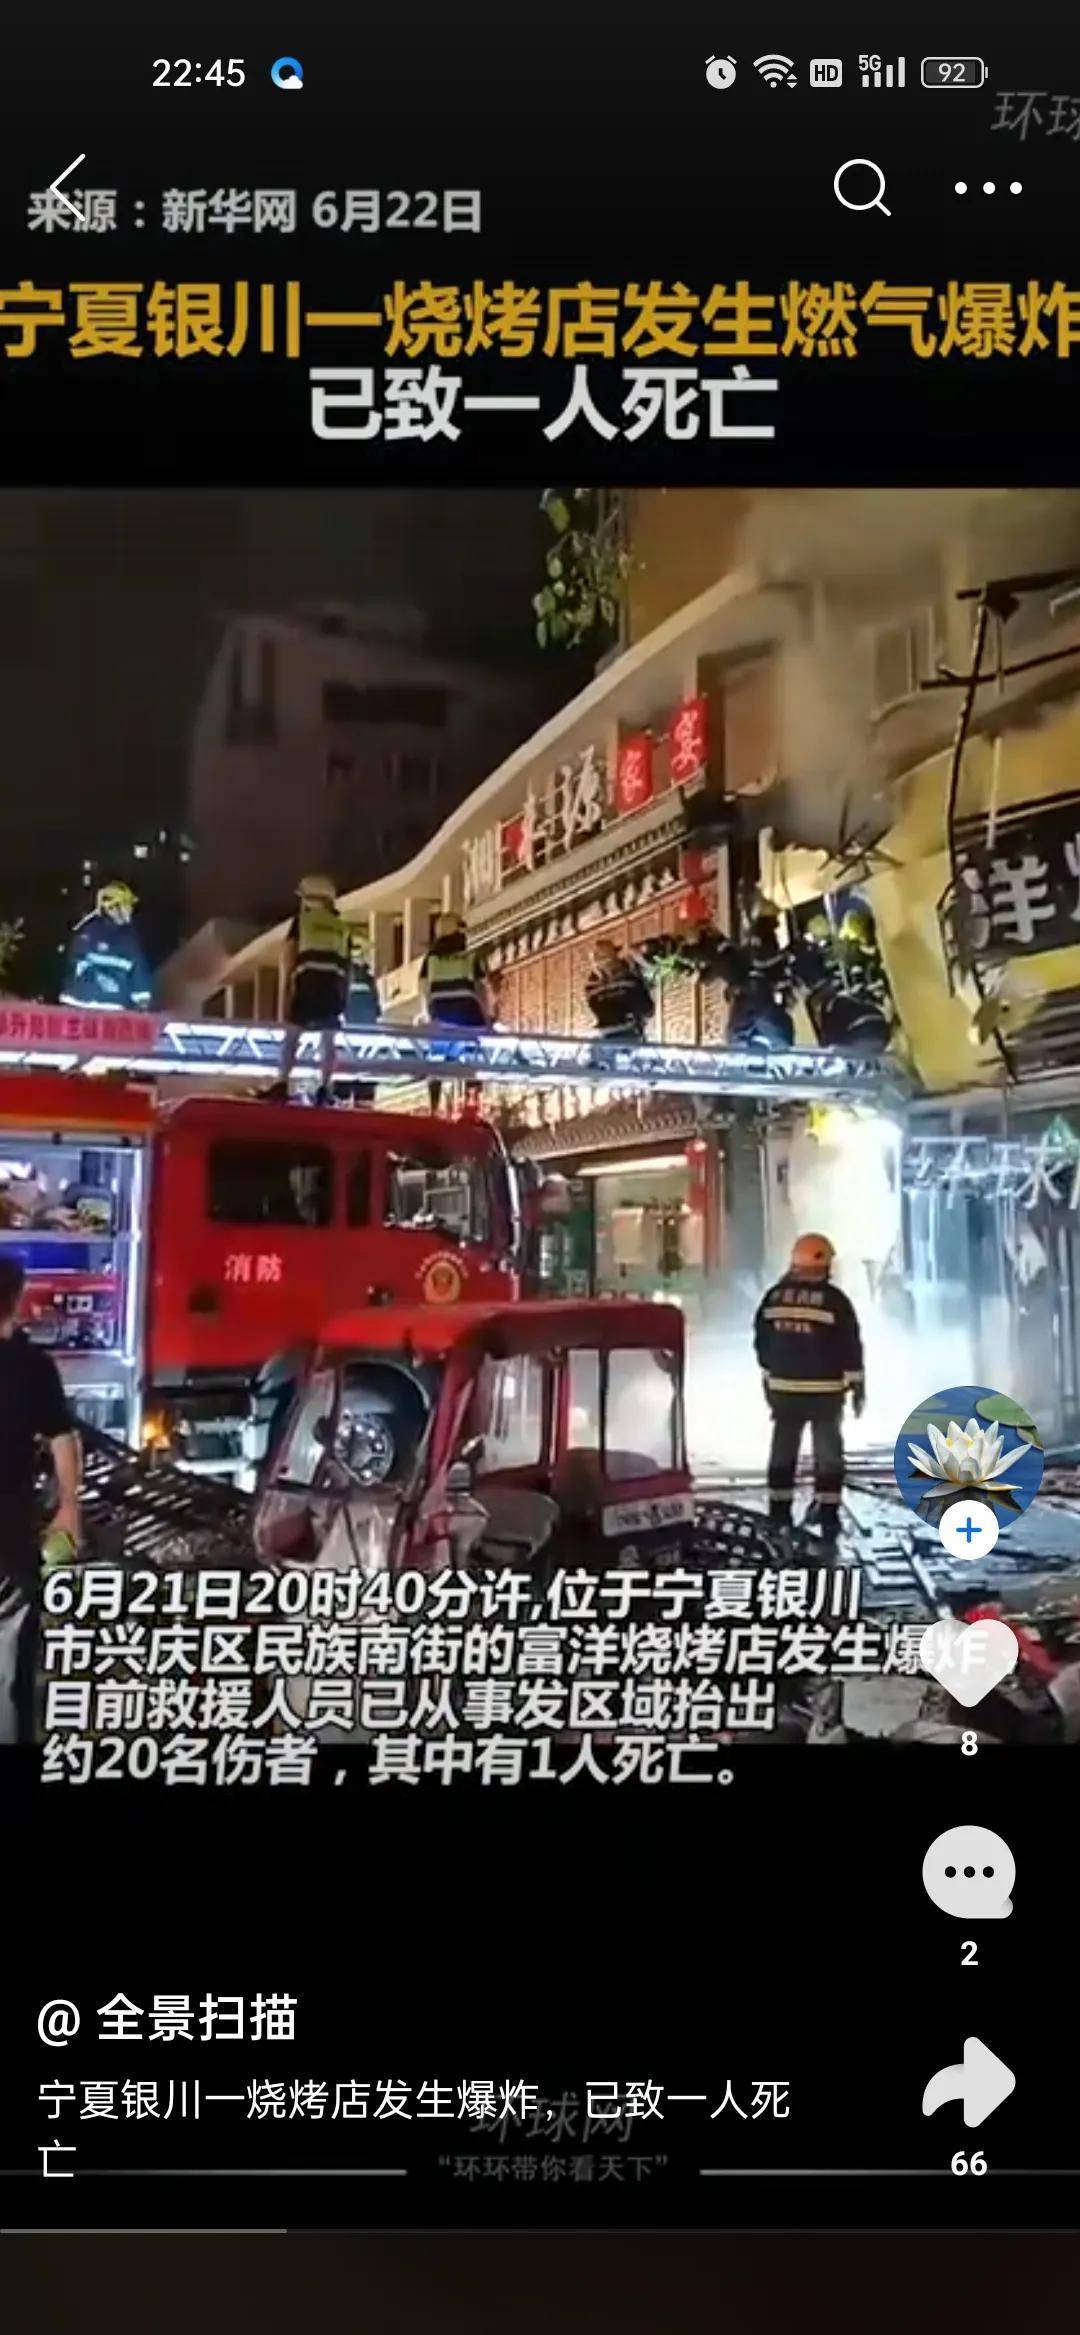 宁夏银川一烧烤店爆炸致31死,燃气安全刻不容缓